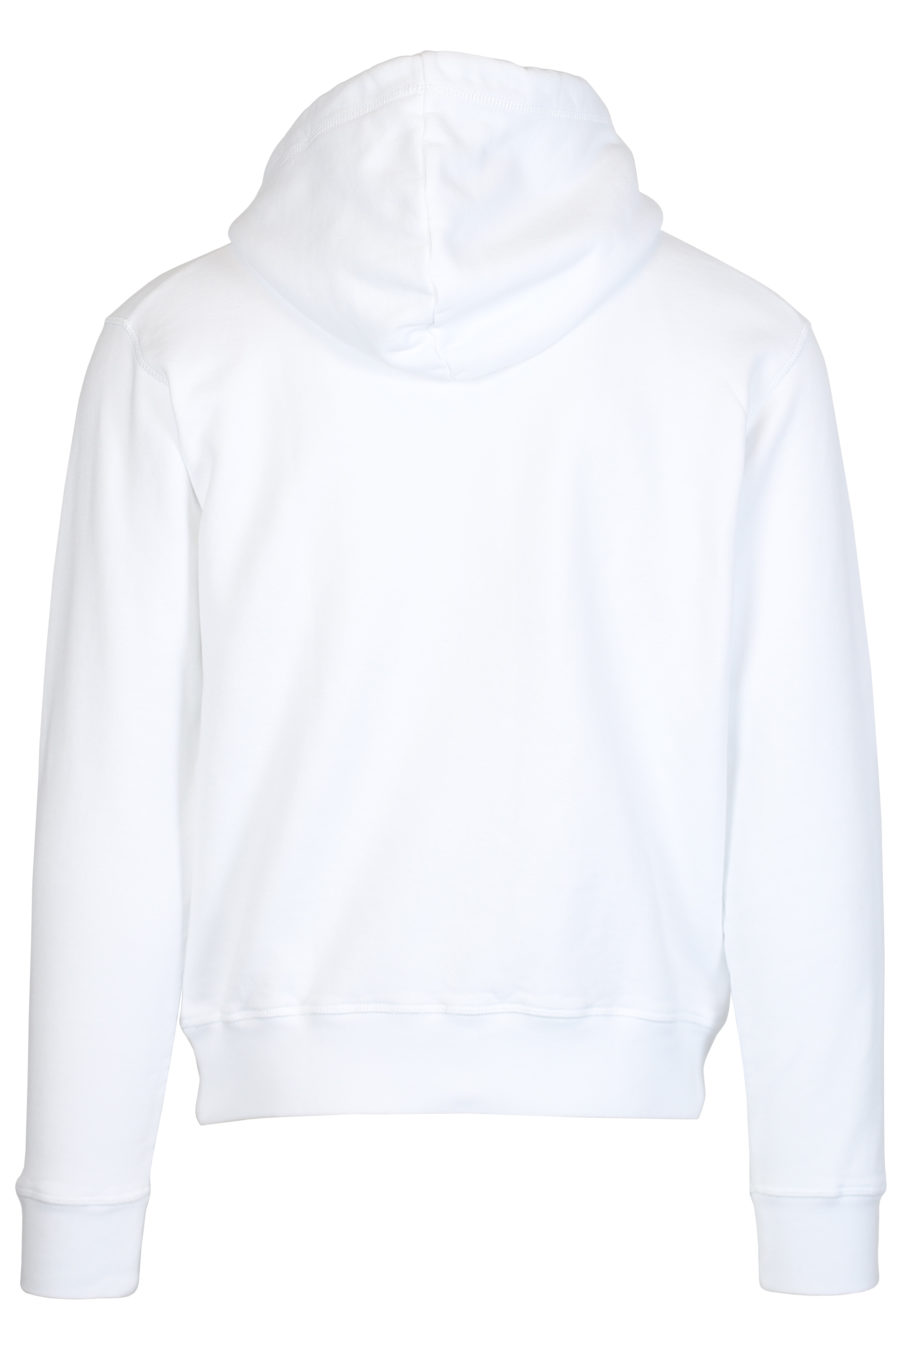 Sudadera blanca con capucha y logo pequeño "Ceresio 9" - IMG 2467 1